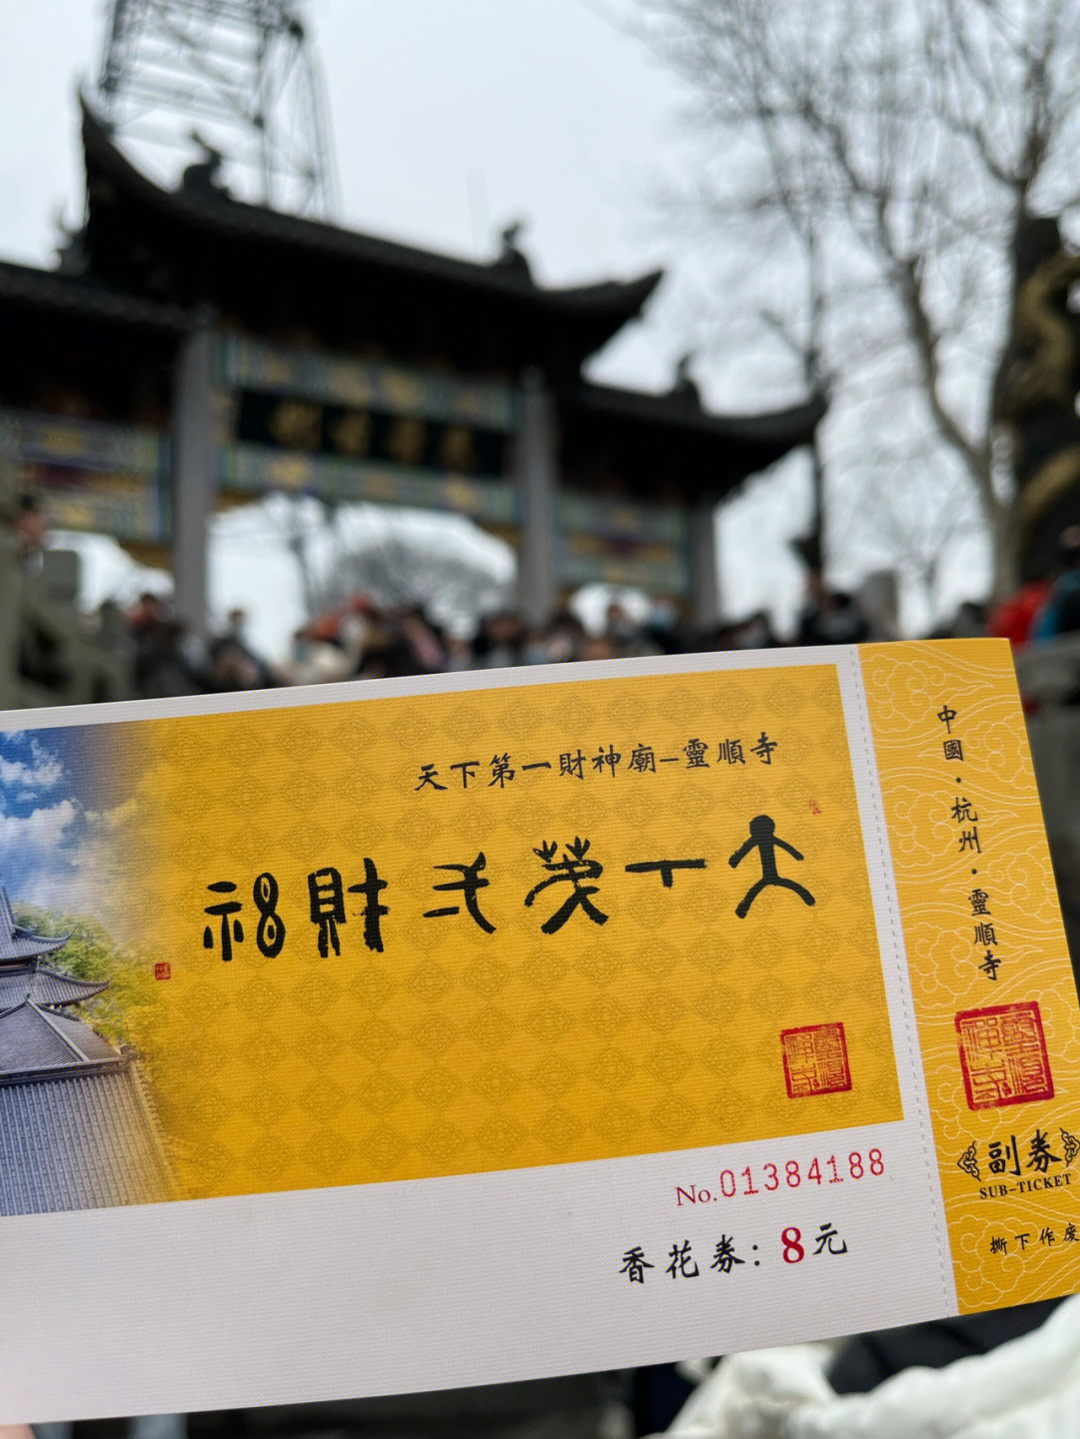 杭州财神庙门票图片